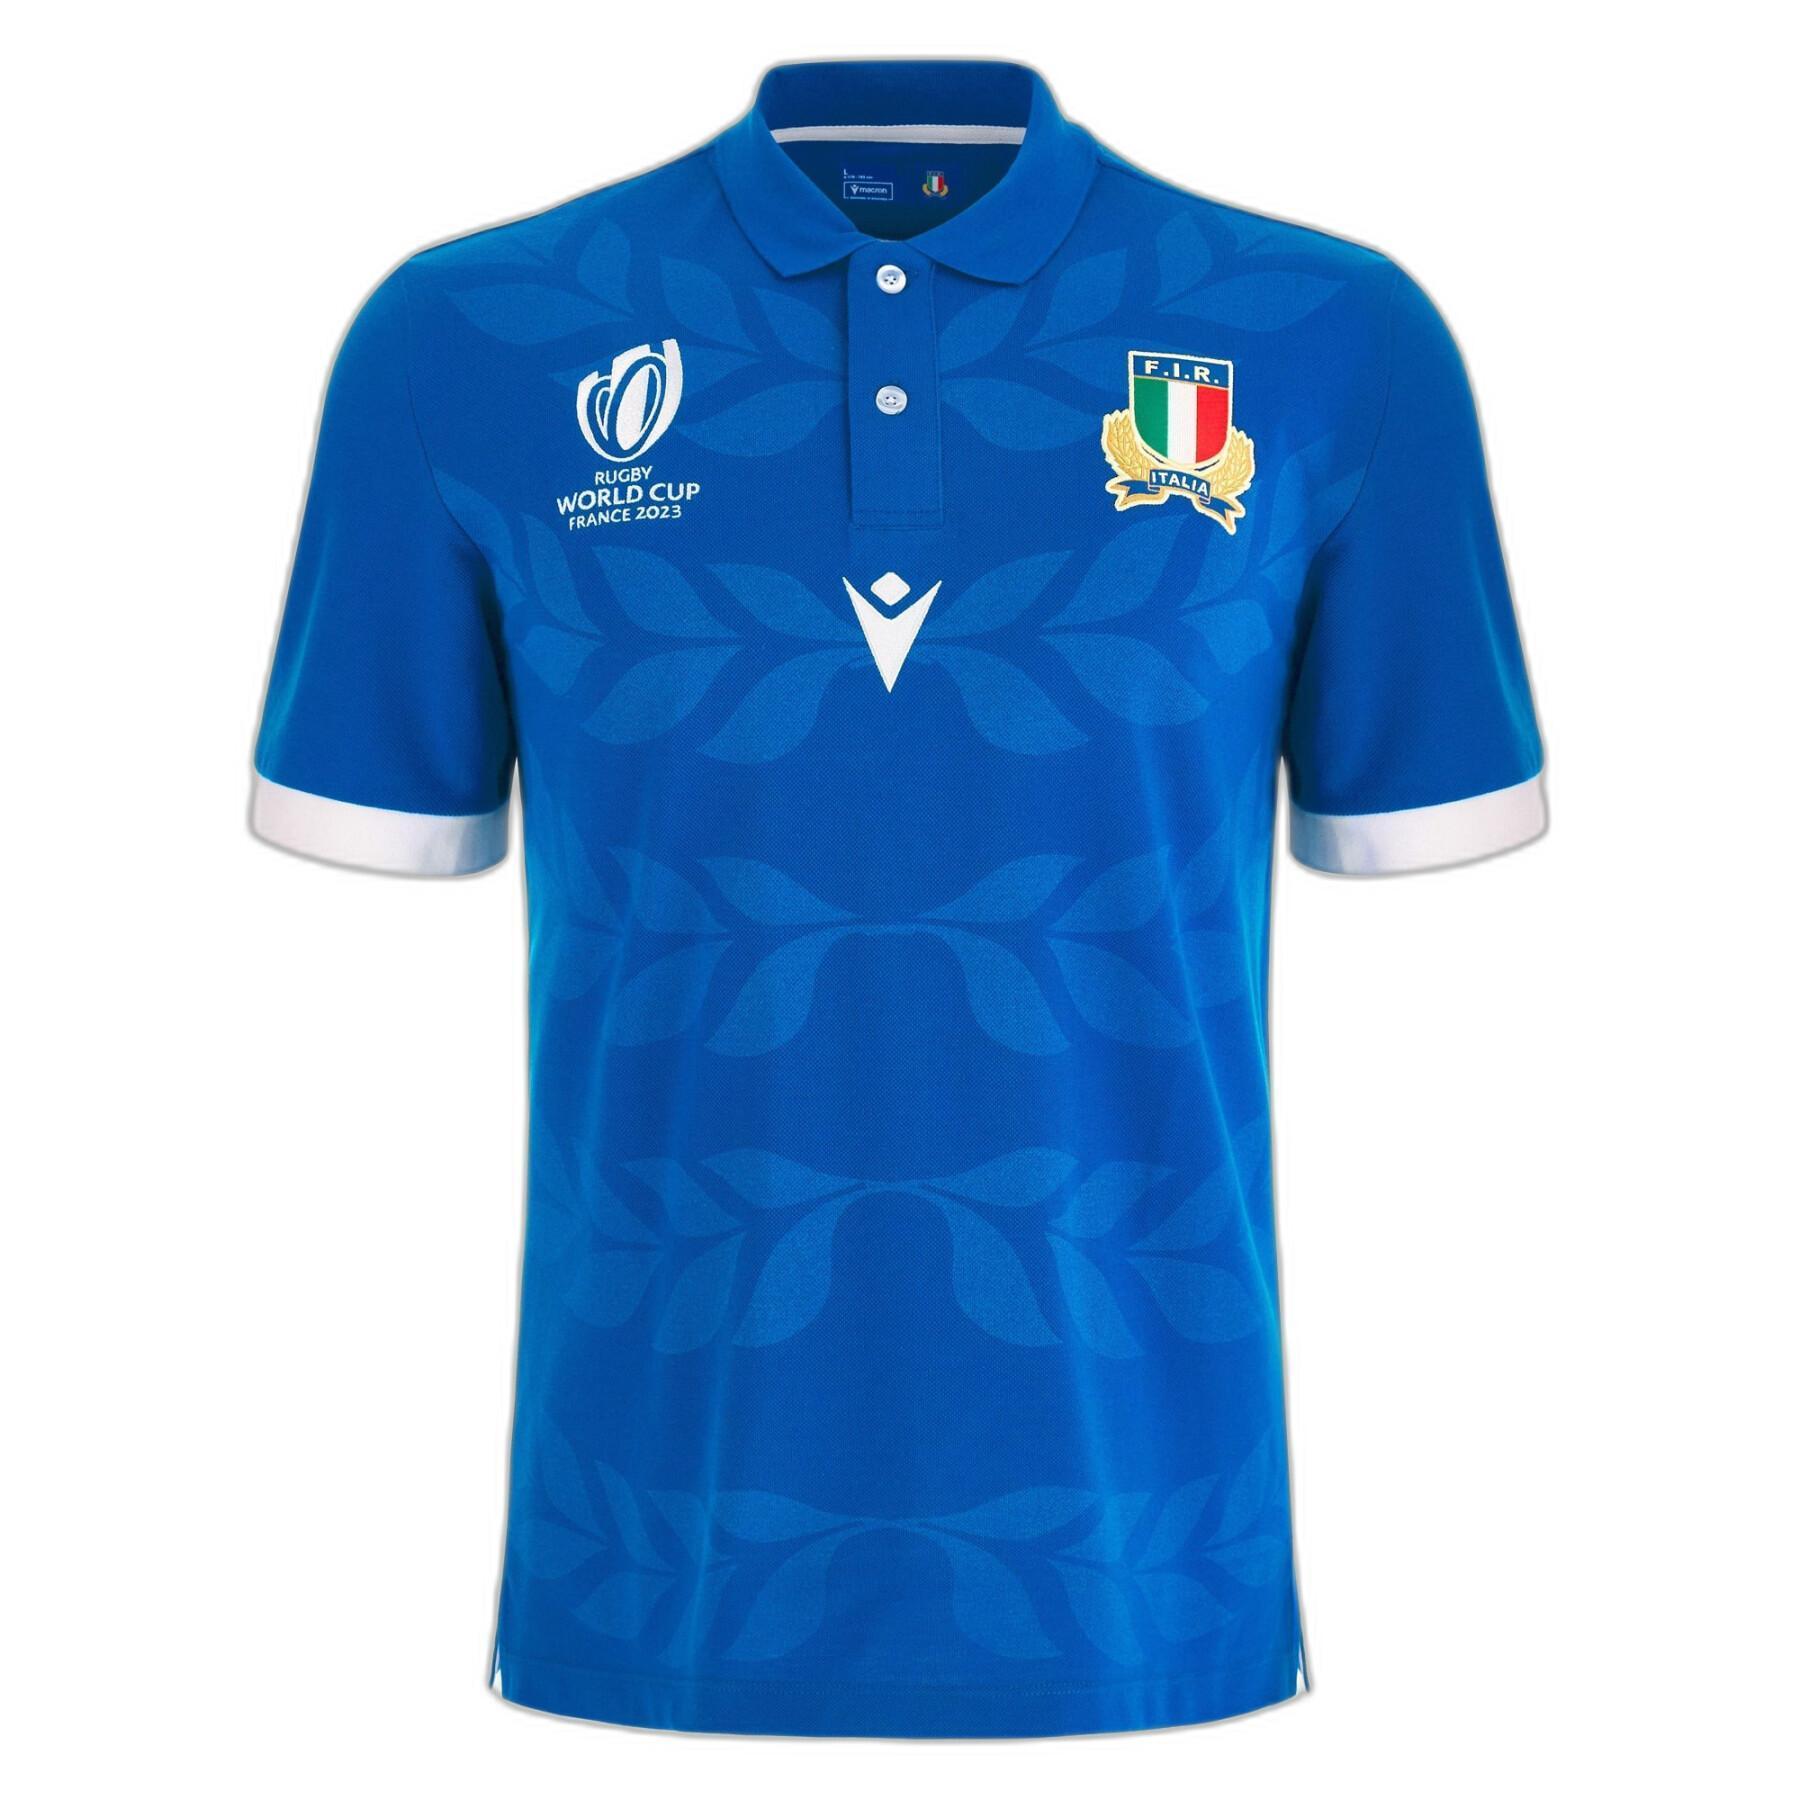 Thuisshirt Italie en coton Coupe du Monde 2023